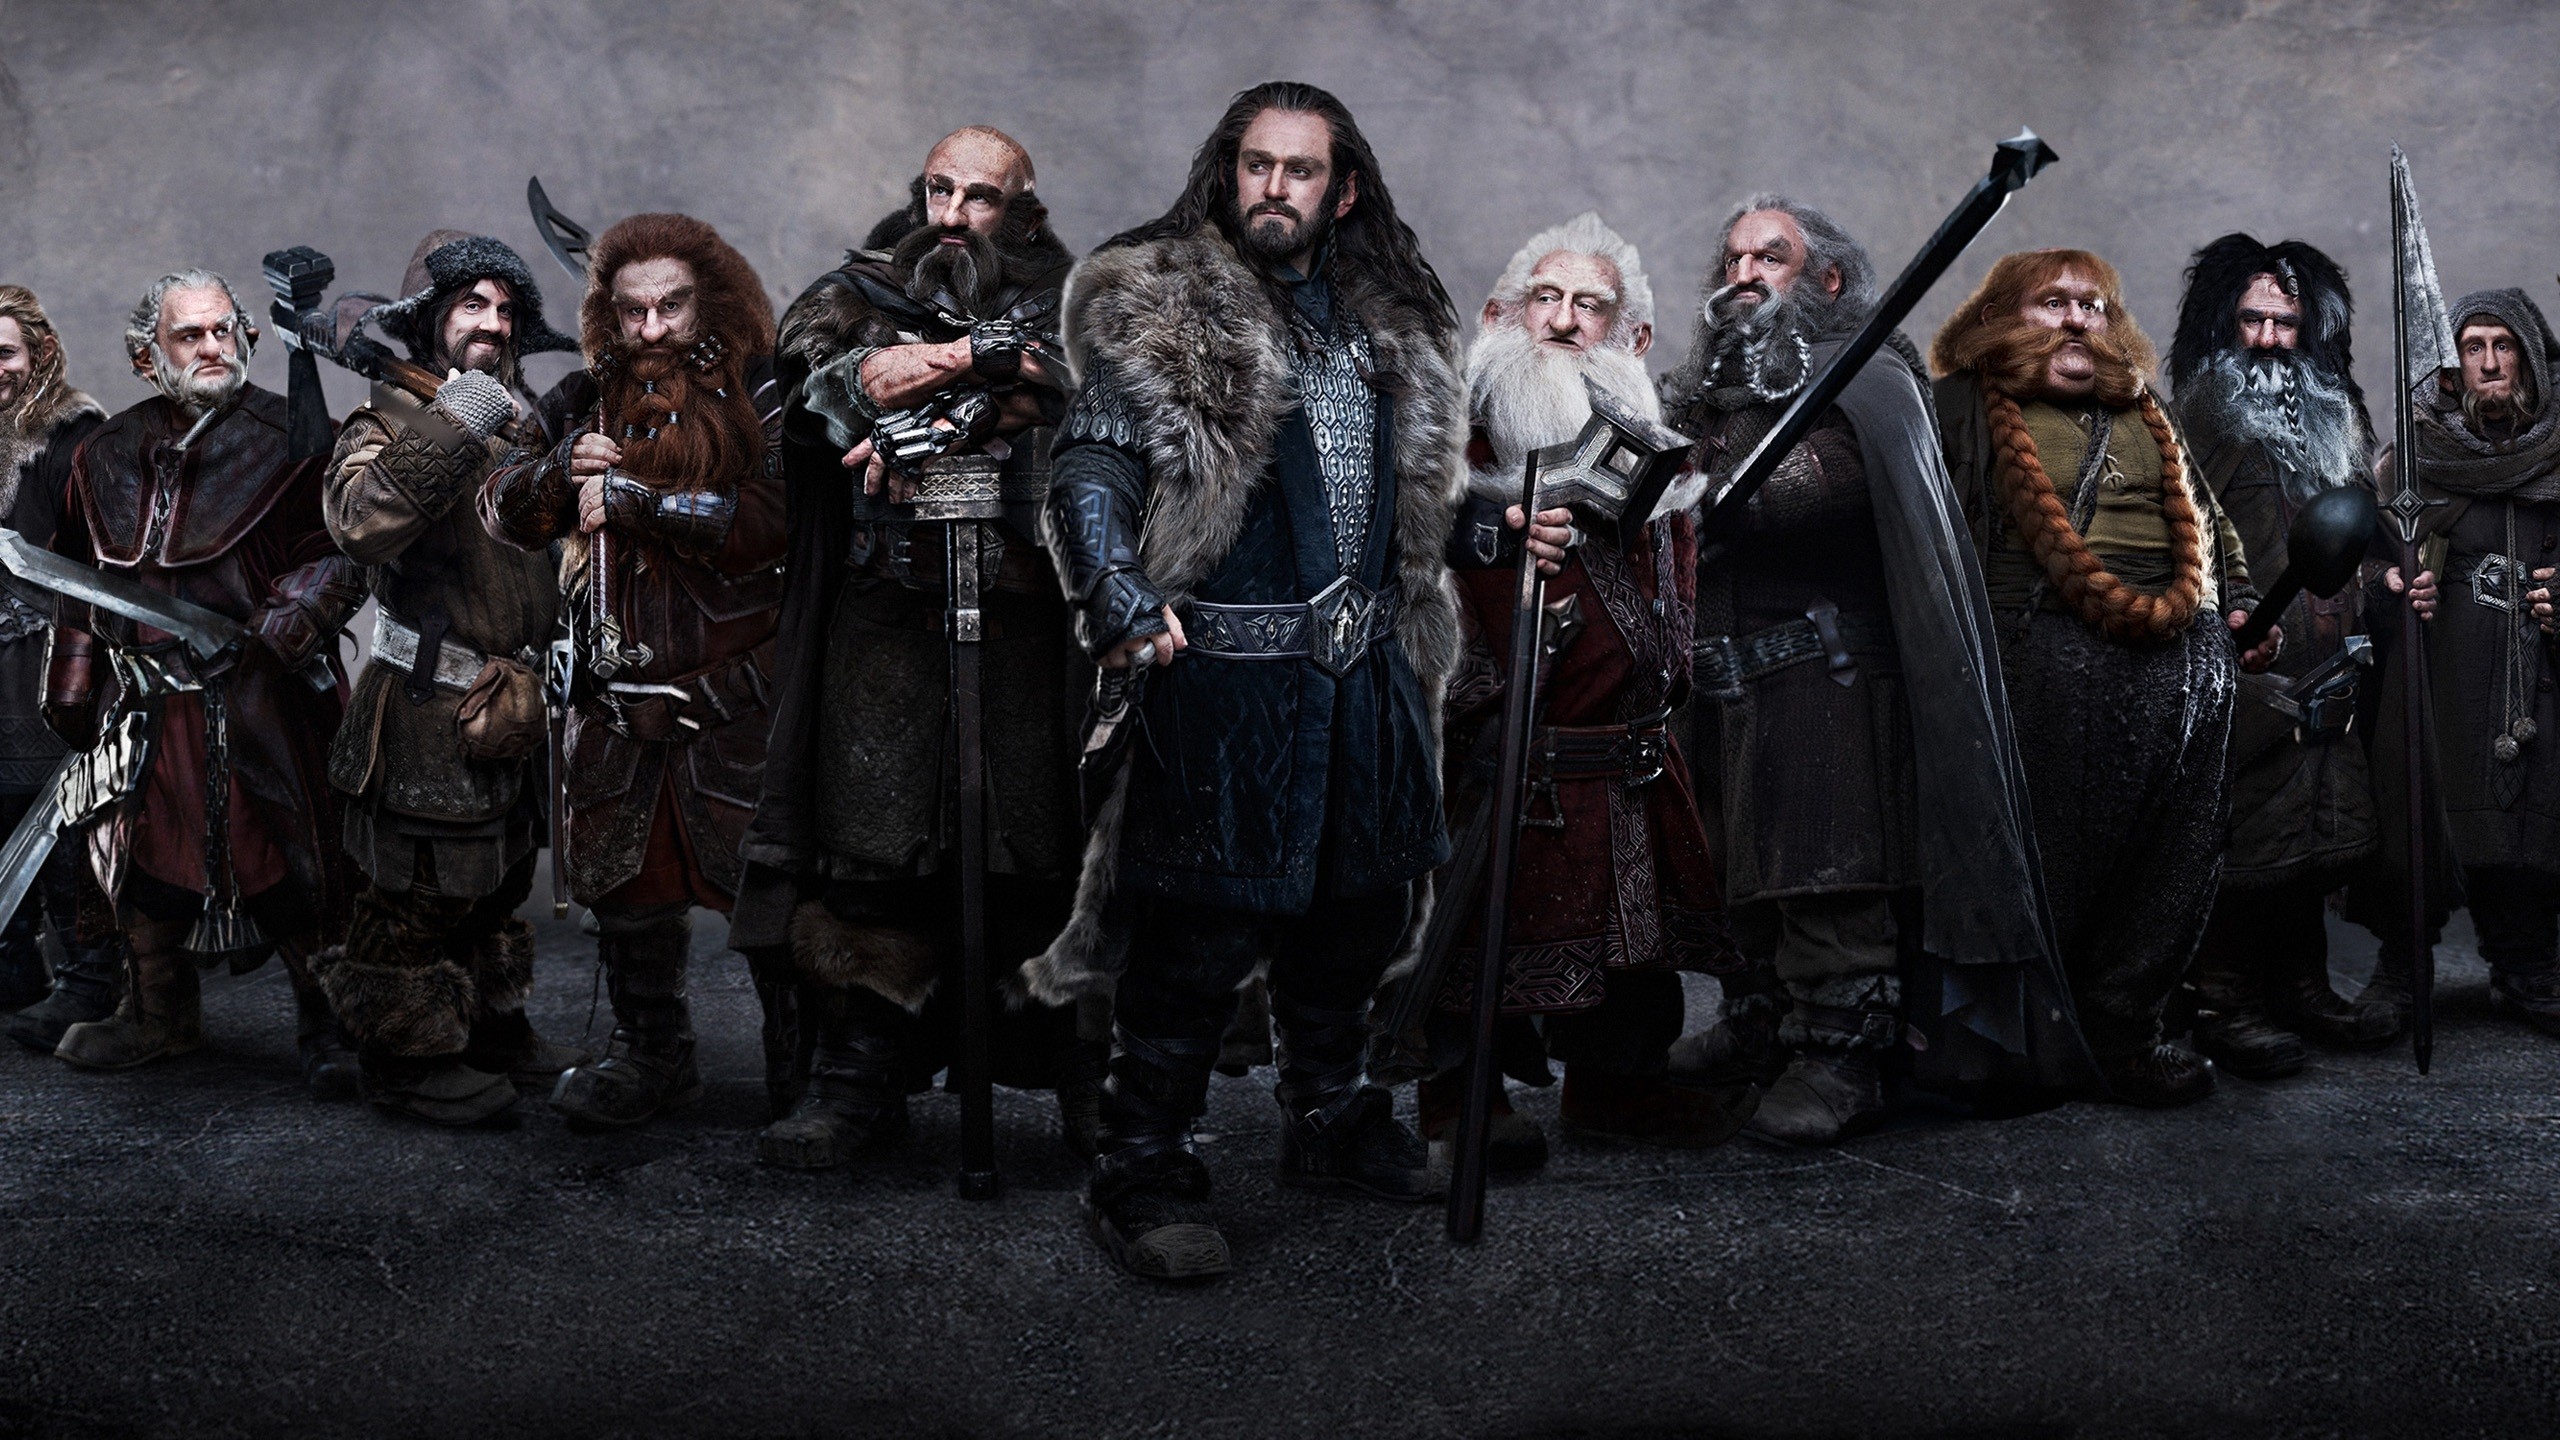 dwarfs, The, Hobbit, Dori, Thorin, Oakenshield, Balin, Dwalin, Bifur, Oin, Gloin, Ori Wallpaper